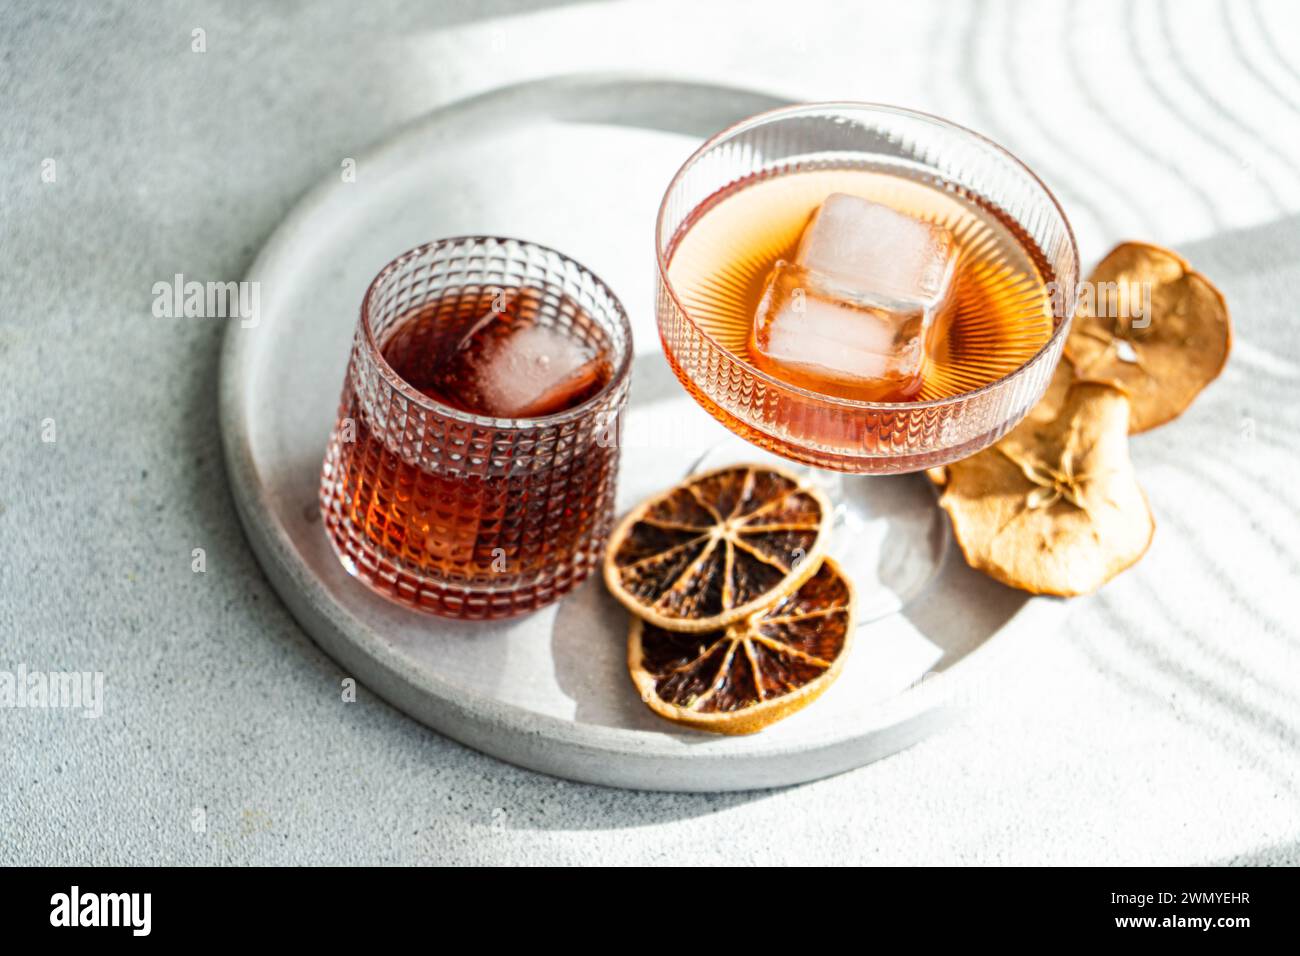 Una presentazione ben illuminata ed elegante di varie bevande alcoliche in bicchieri a costine, accentuata da cubetti di ghiaccio e agrumi secchi su un vassoio circolare Foto Stock